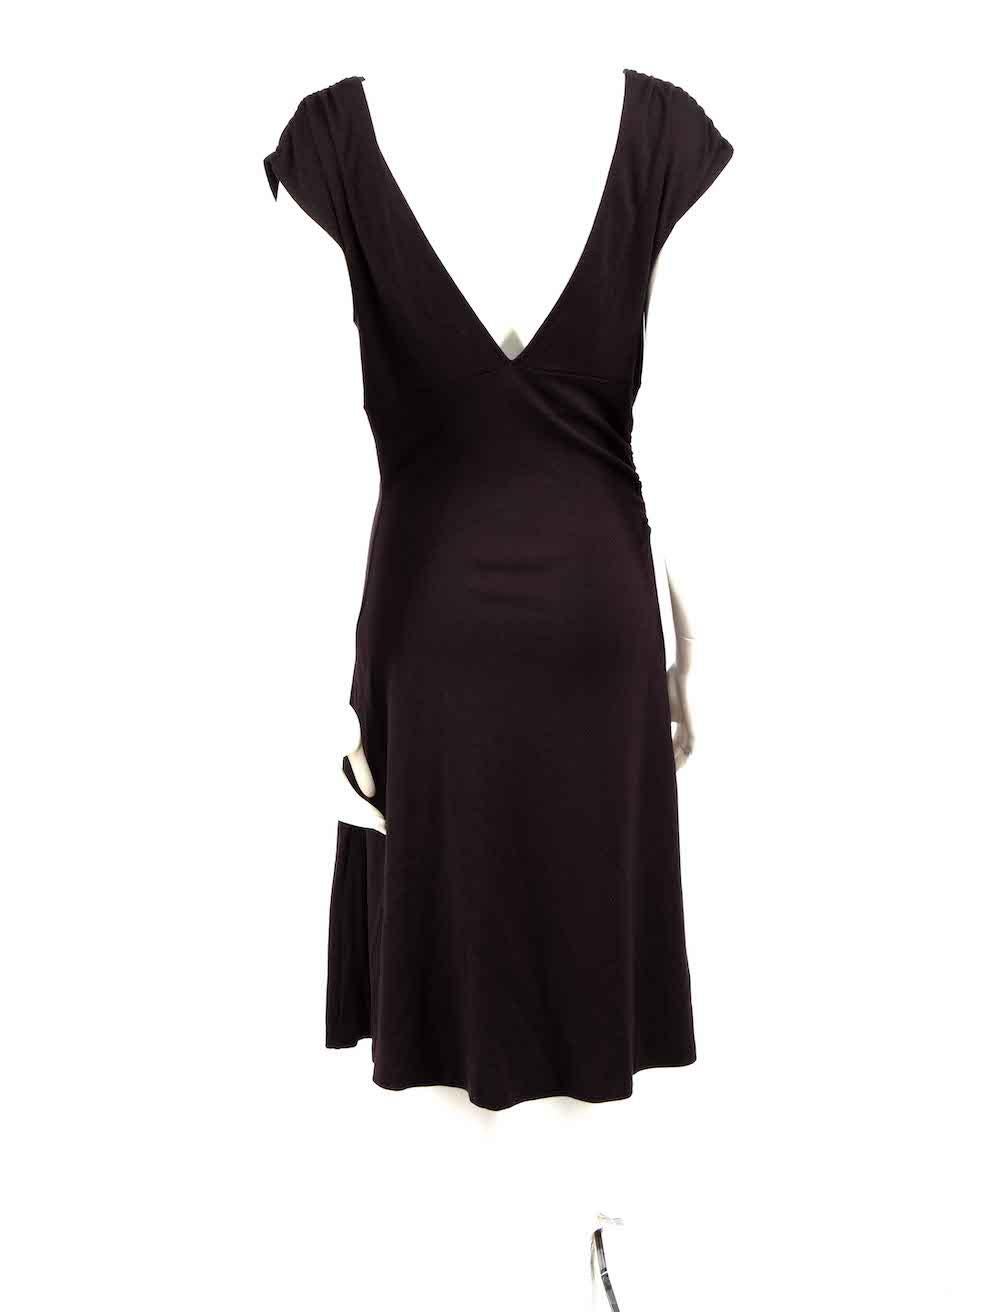 Diane Von Furstenberg Purple Wool V-Neck Dress Size XXL In Good Condition For Sale In London, GB